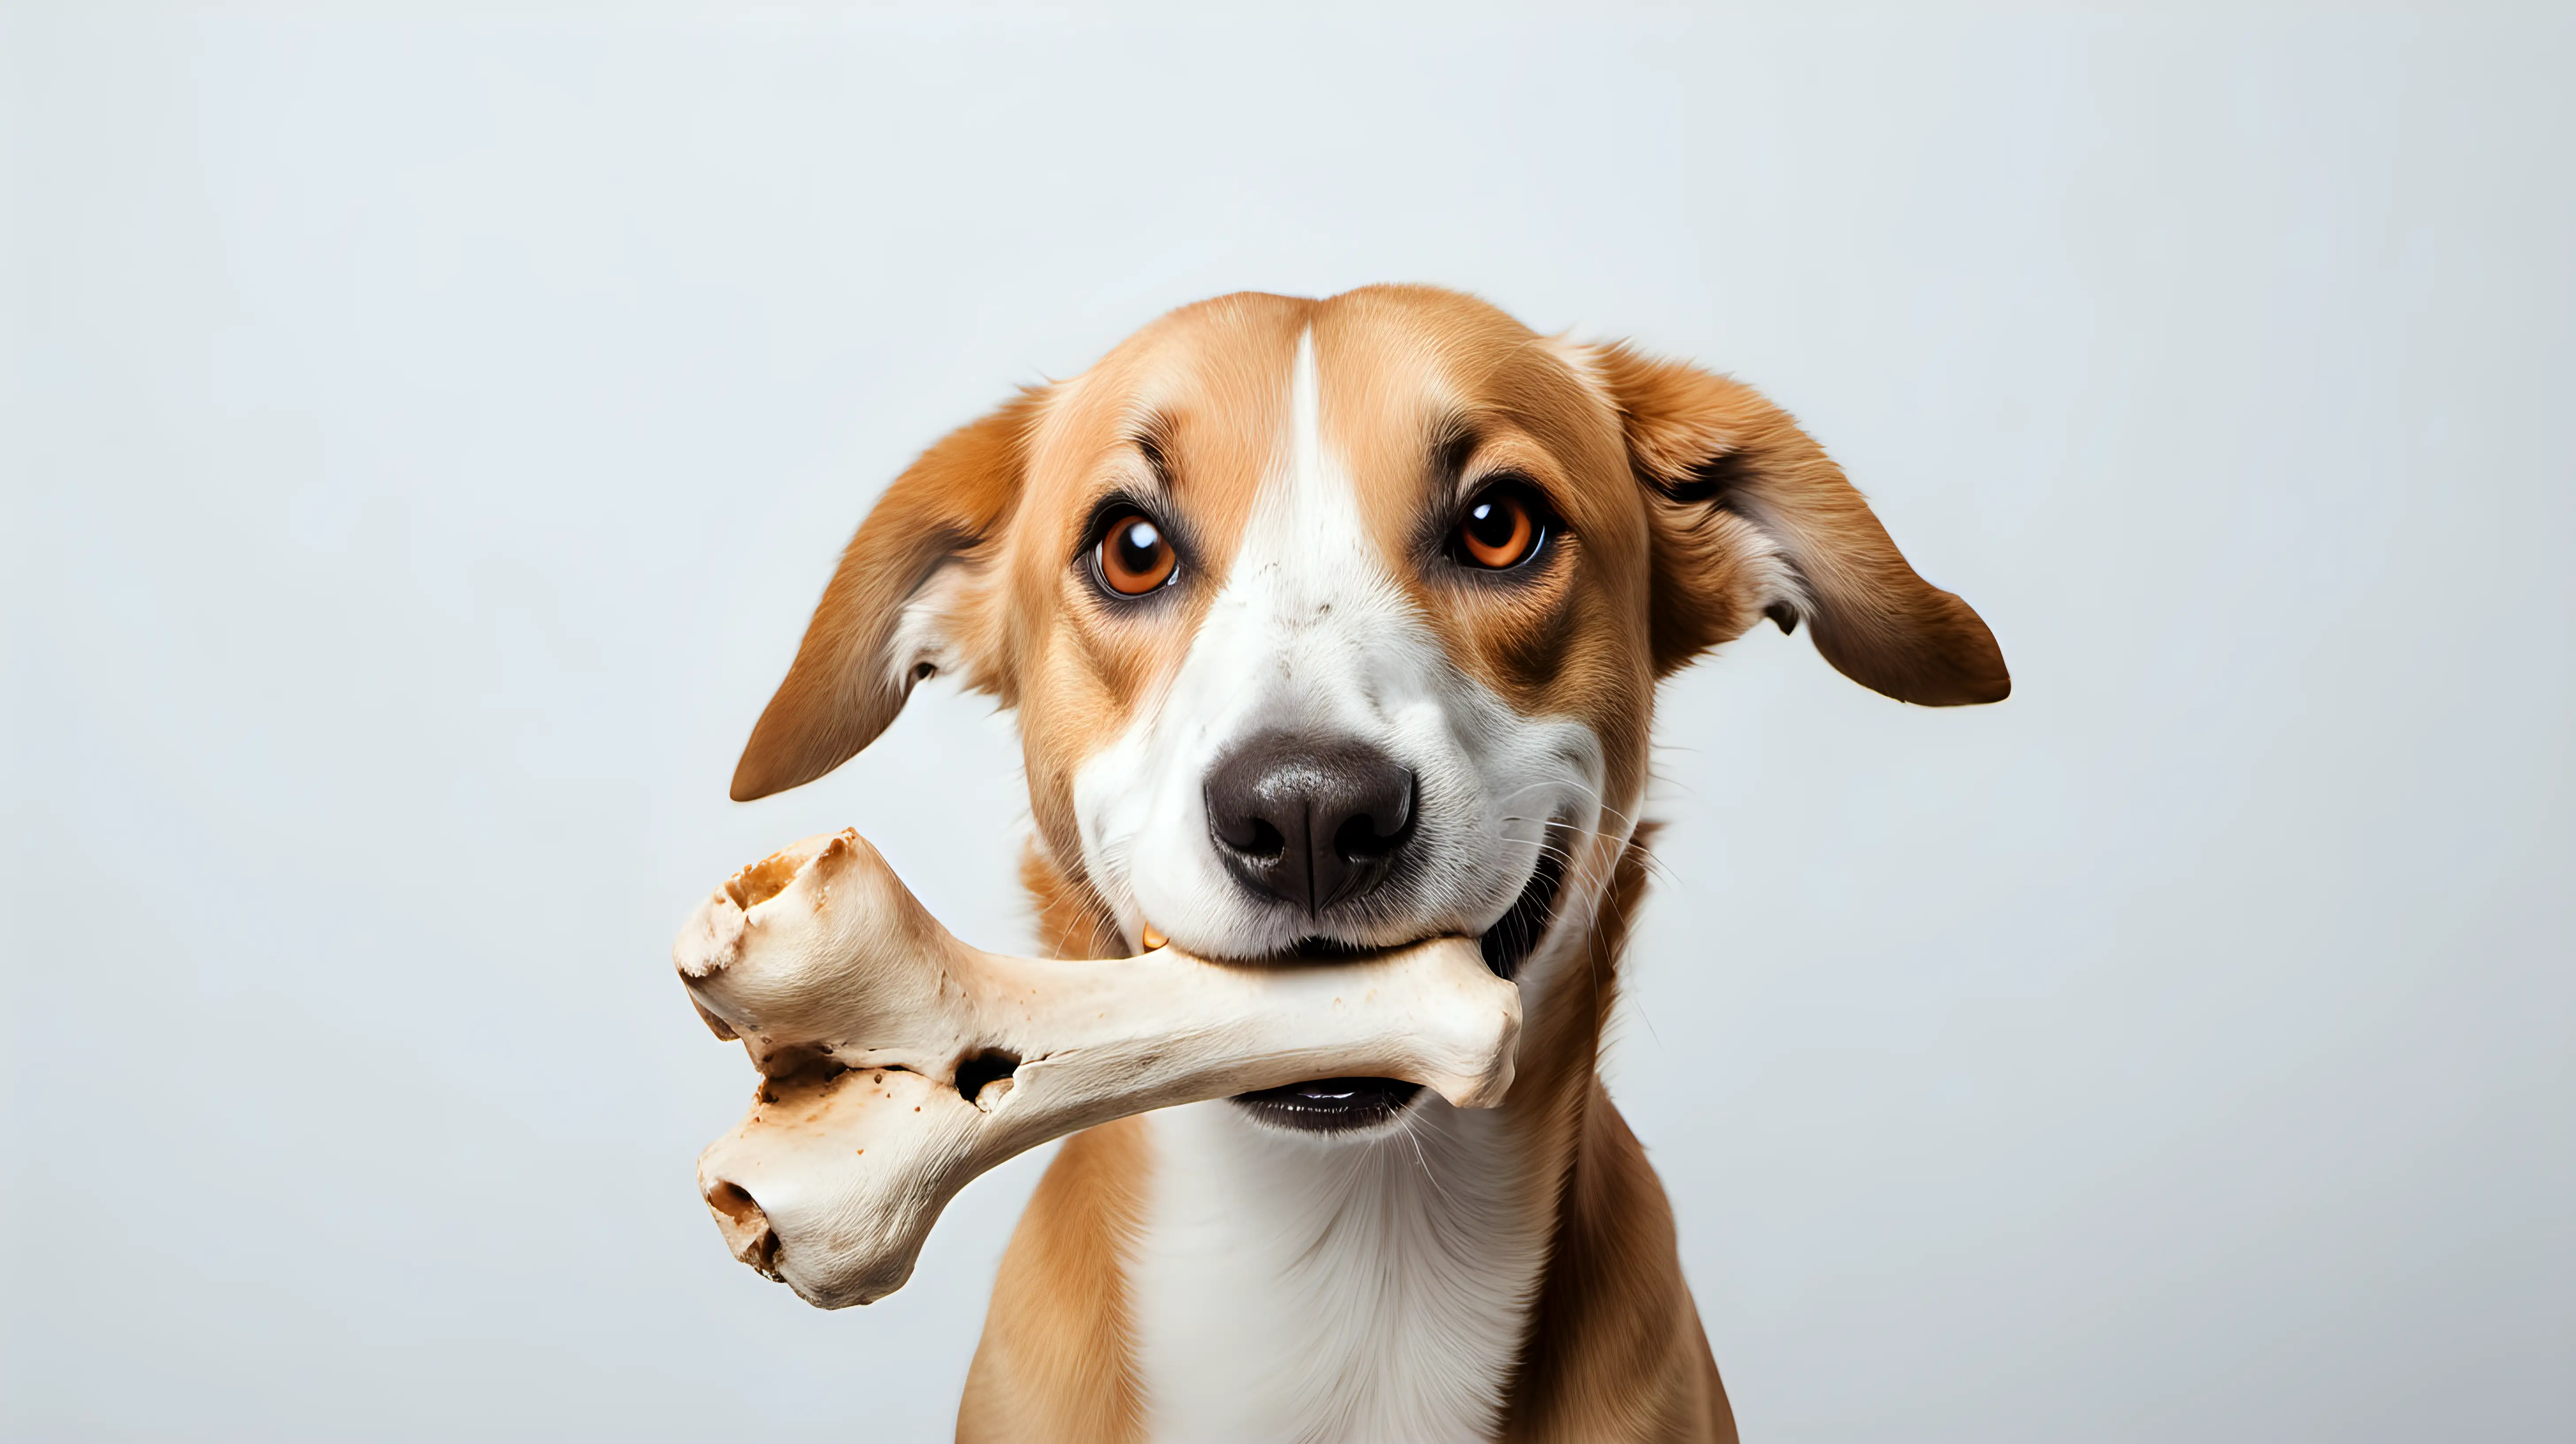 Canine Holding Bone Adorable Dog Poses with Bone on White Background